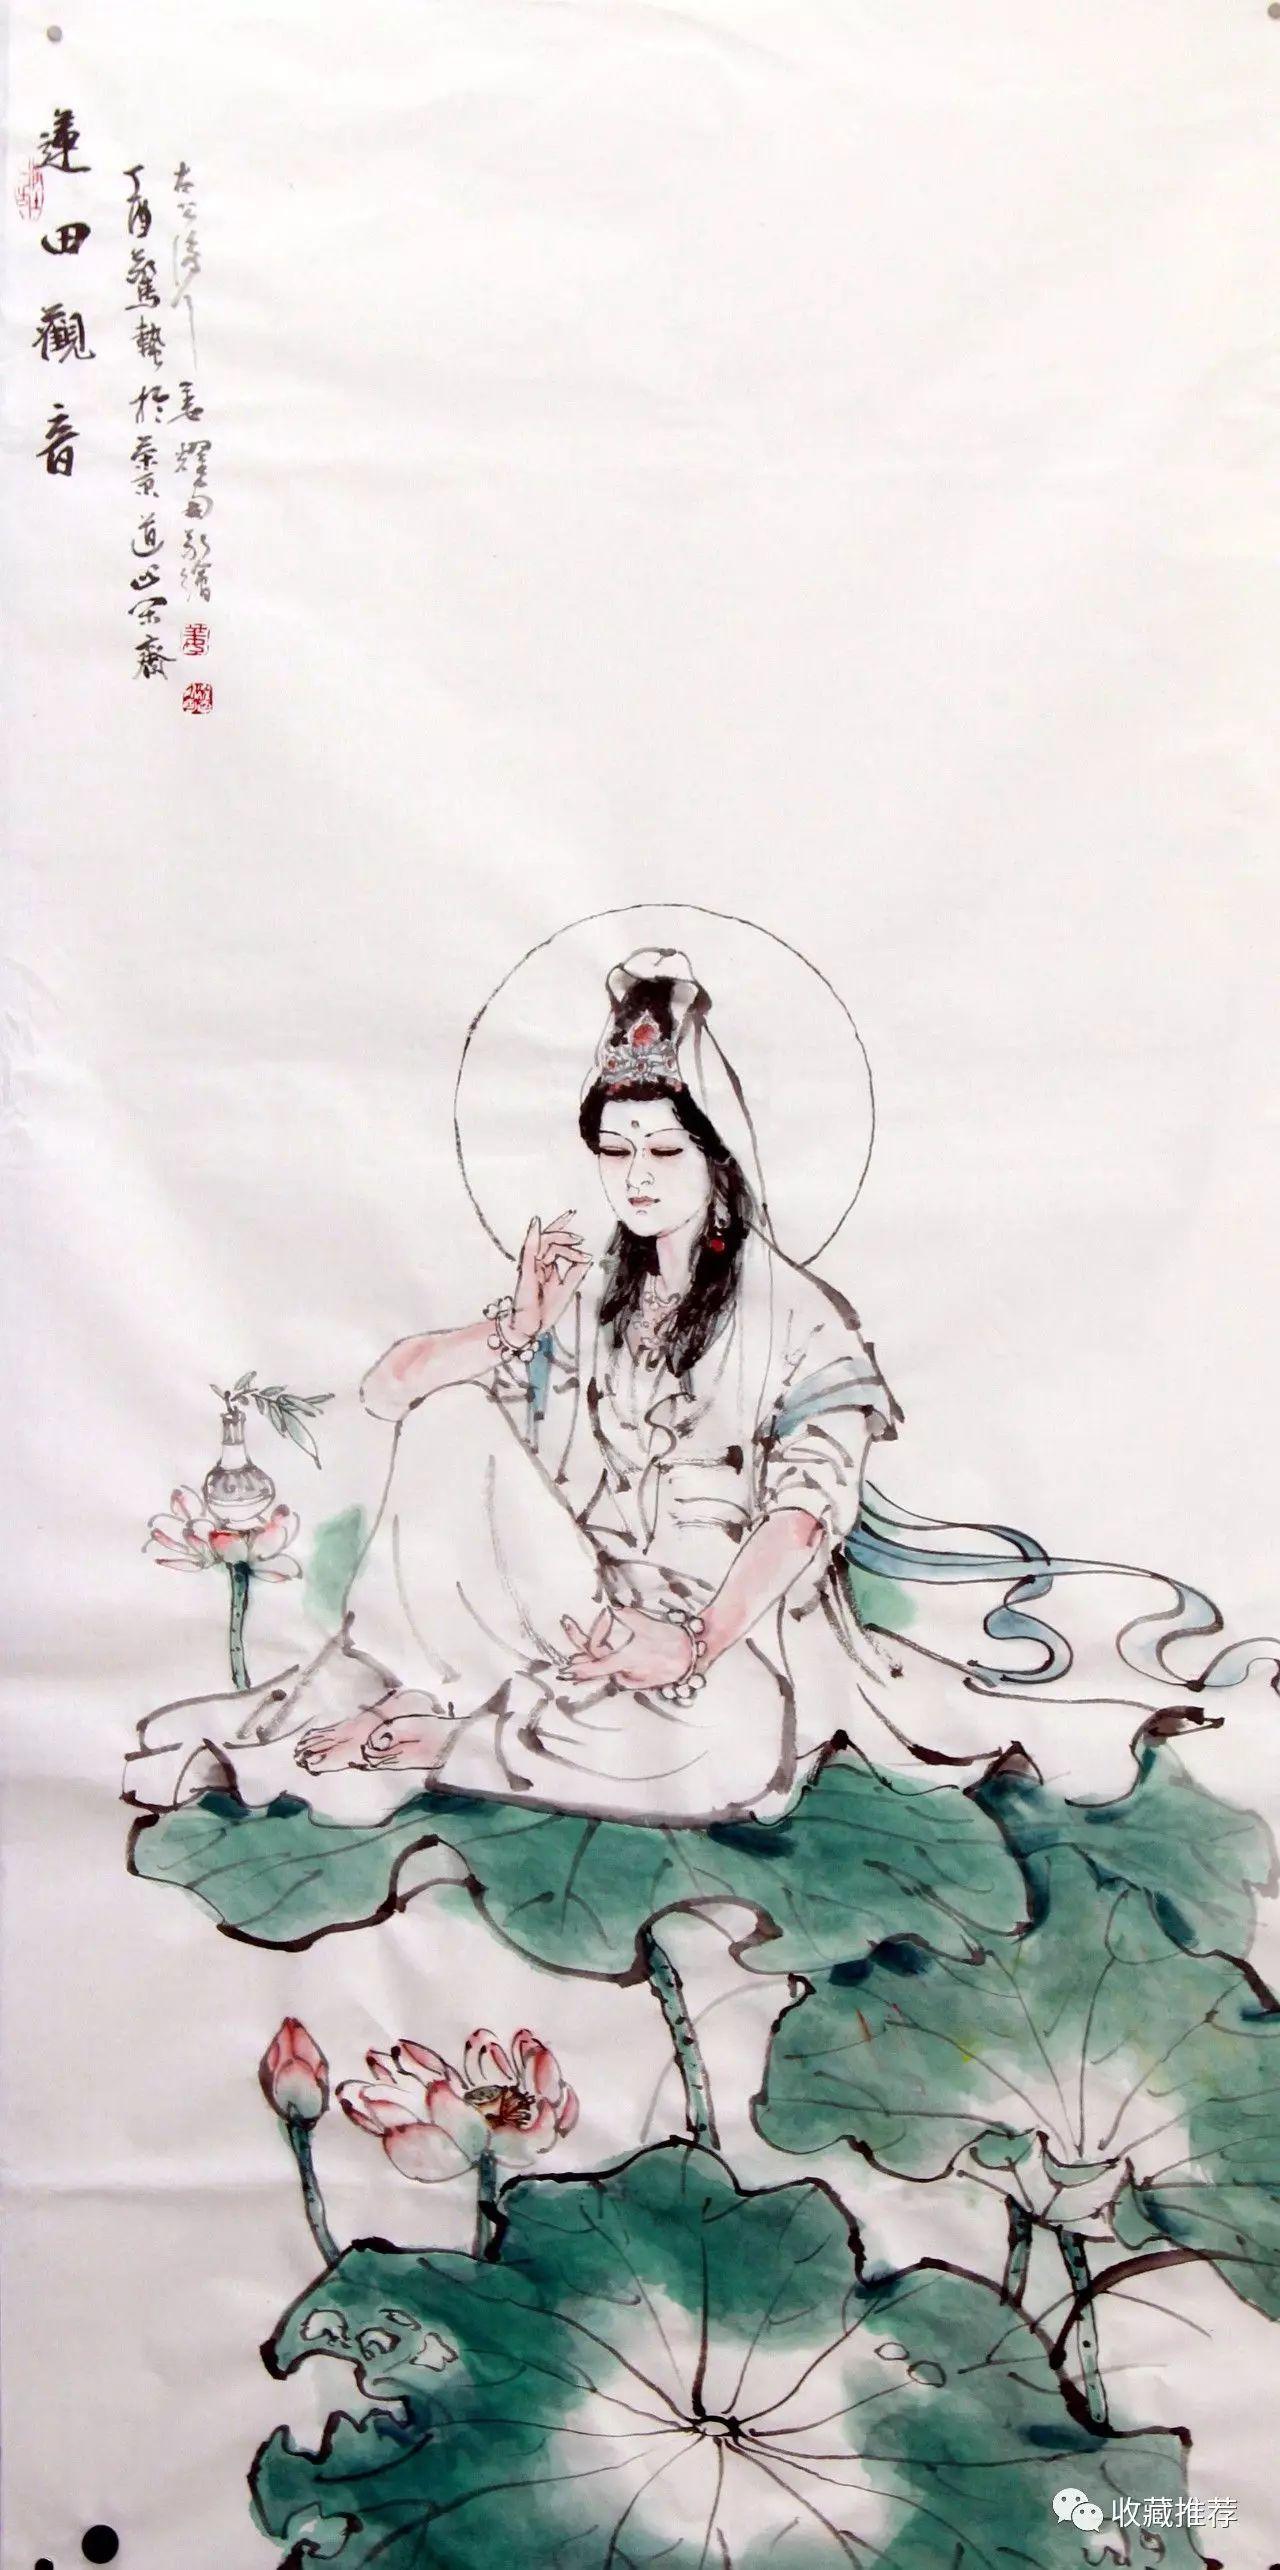 姜耀南先生毕其精力工于国画研究和创作,以传统为皈依,又不古于传统